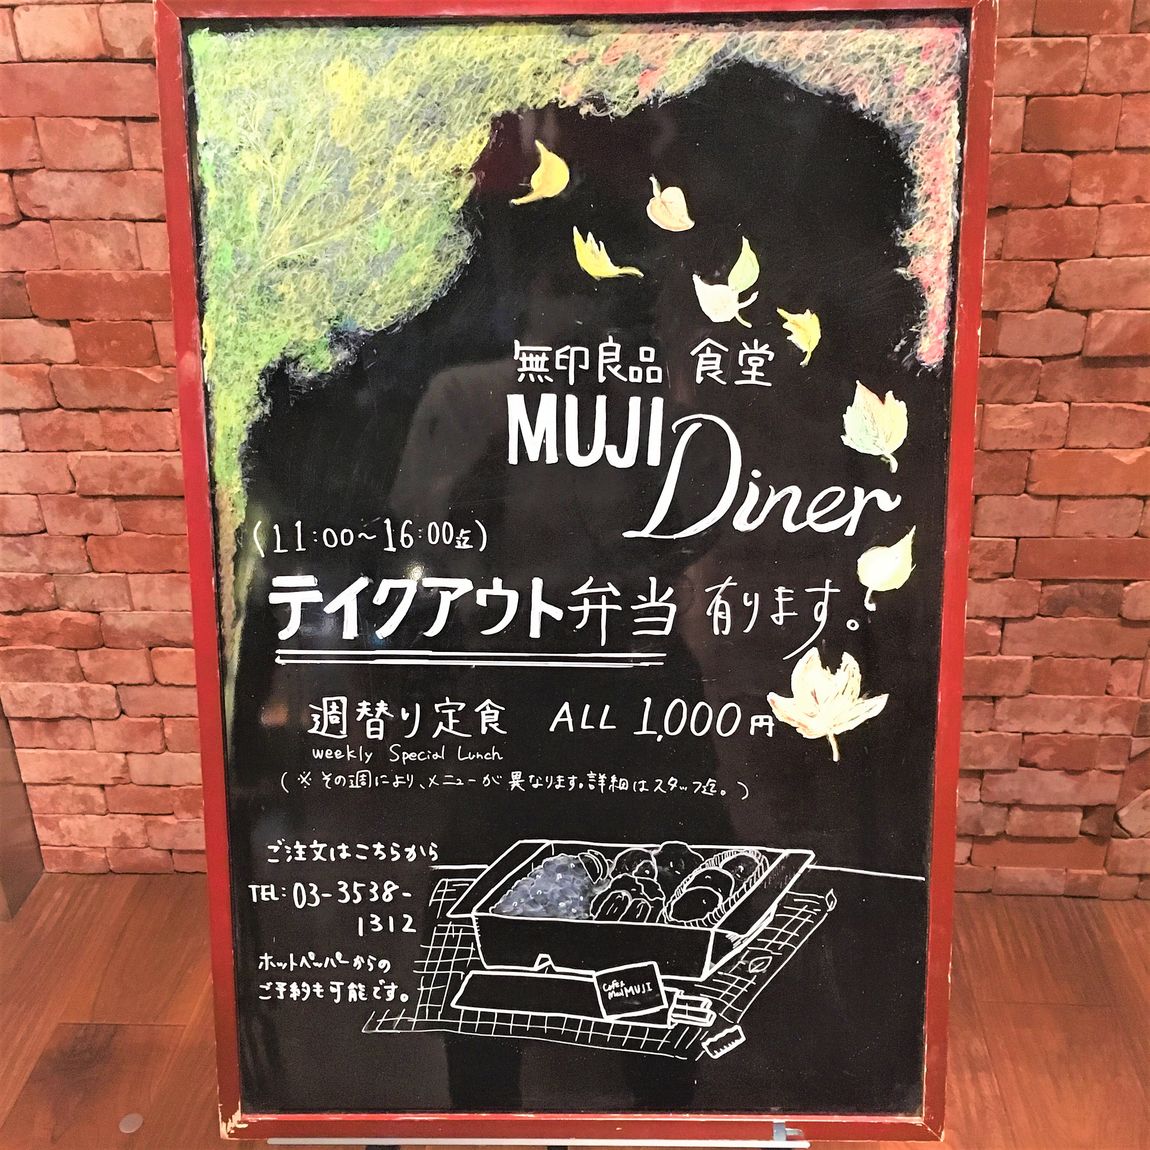 【MUJI Diner 銀座】今週のテイクアウト